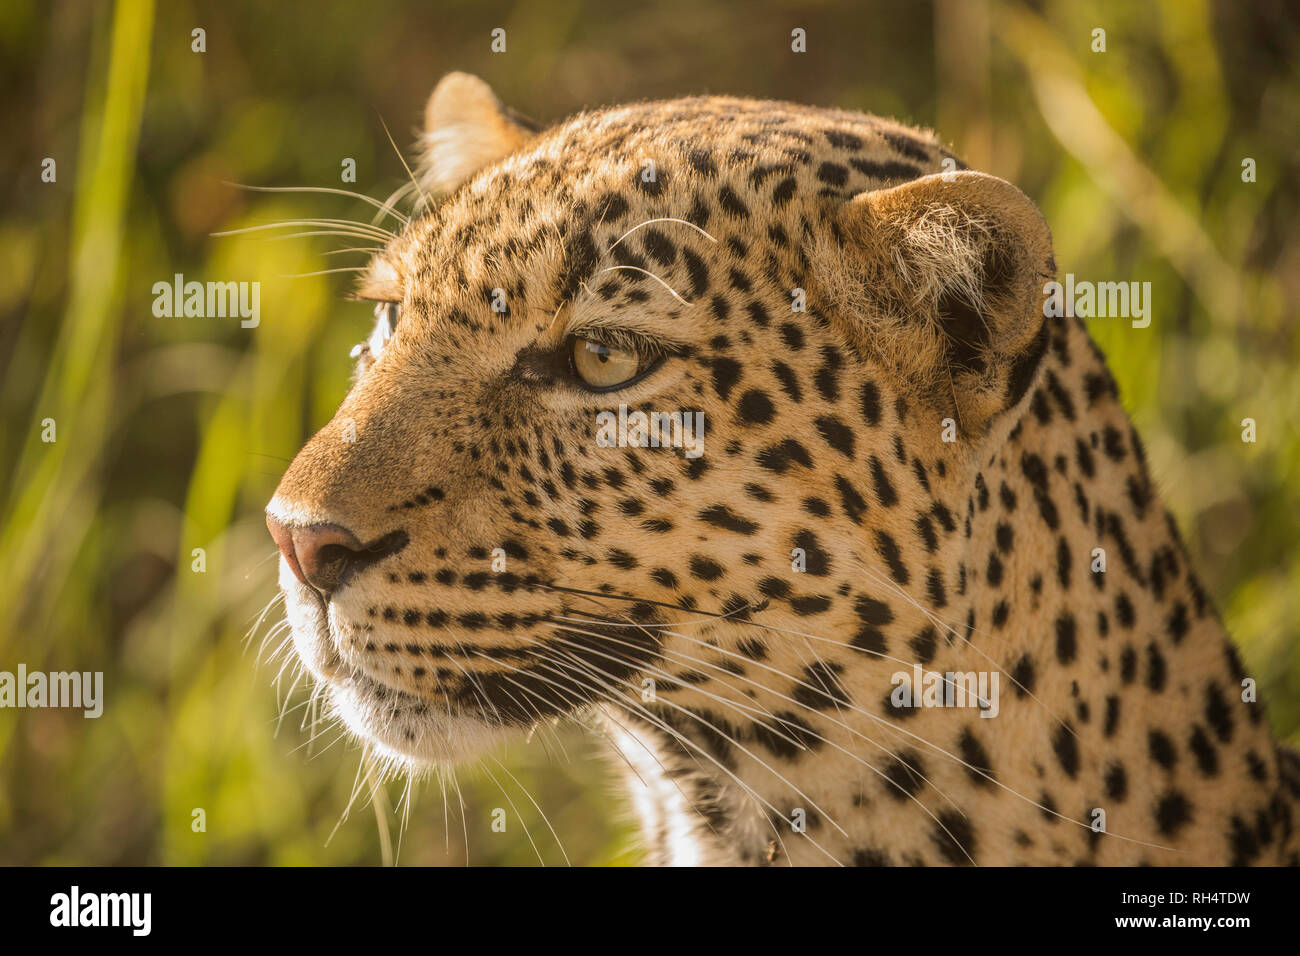 Close up of leopard face Banque D'Images